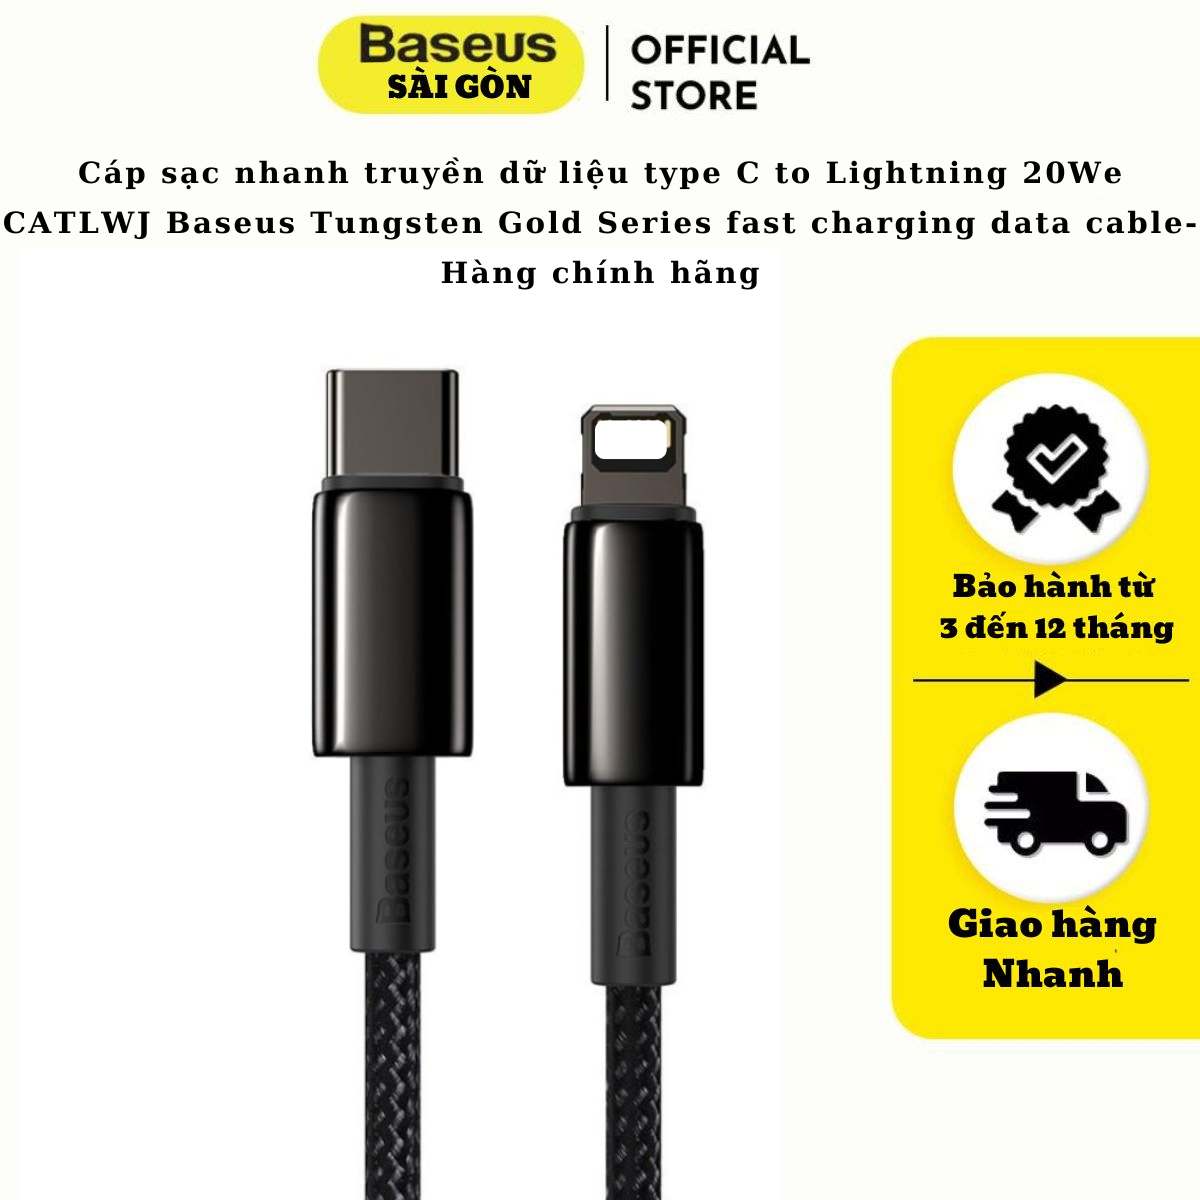 Cáp sạc nhanh truyền dữ liệu type C to Light-ning 20W cho I-phone CATLWJ Baseus Tungsten Gold Series fast charging data cable (20W, Fast Charging &amp; Data Cable)- Hàng chính hãng